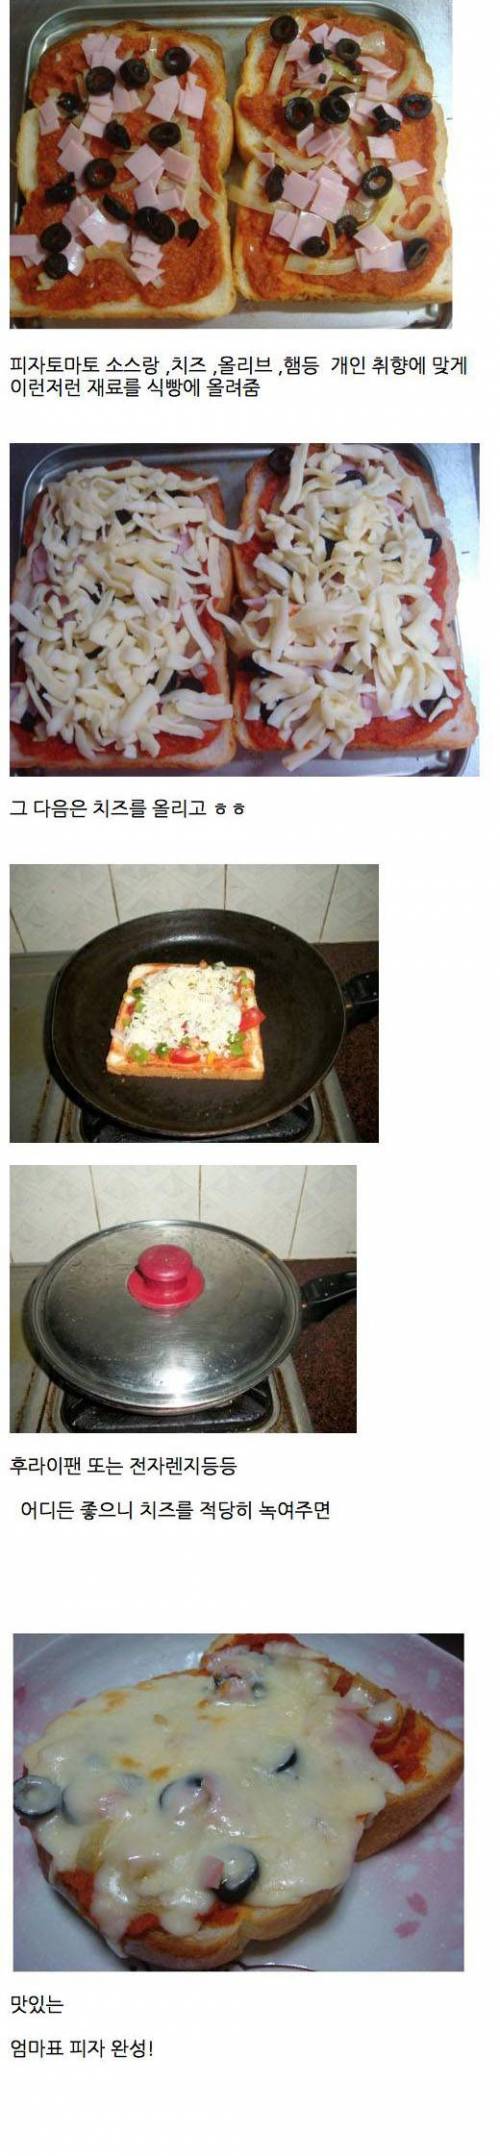 어릴적 비싼 피자대신 엄마가 해주시던 피자.jpg